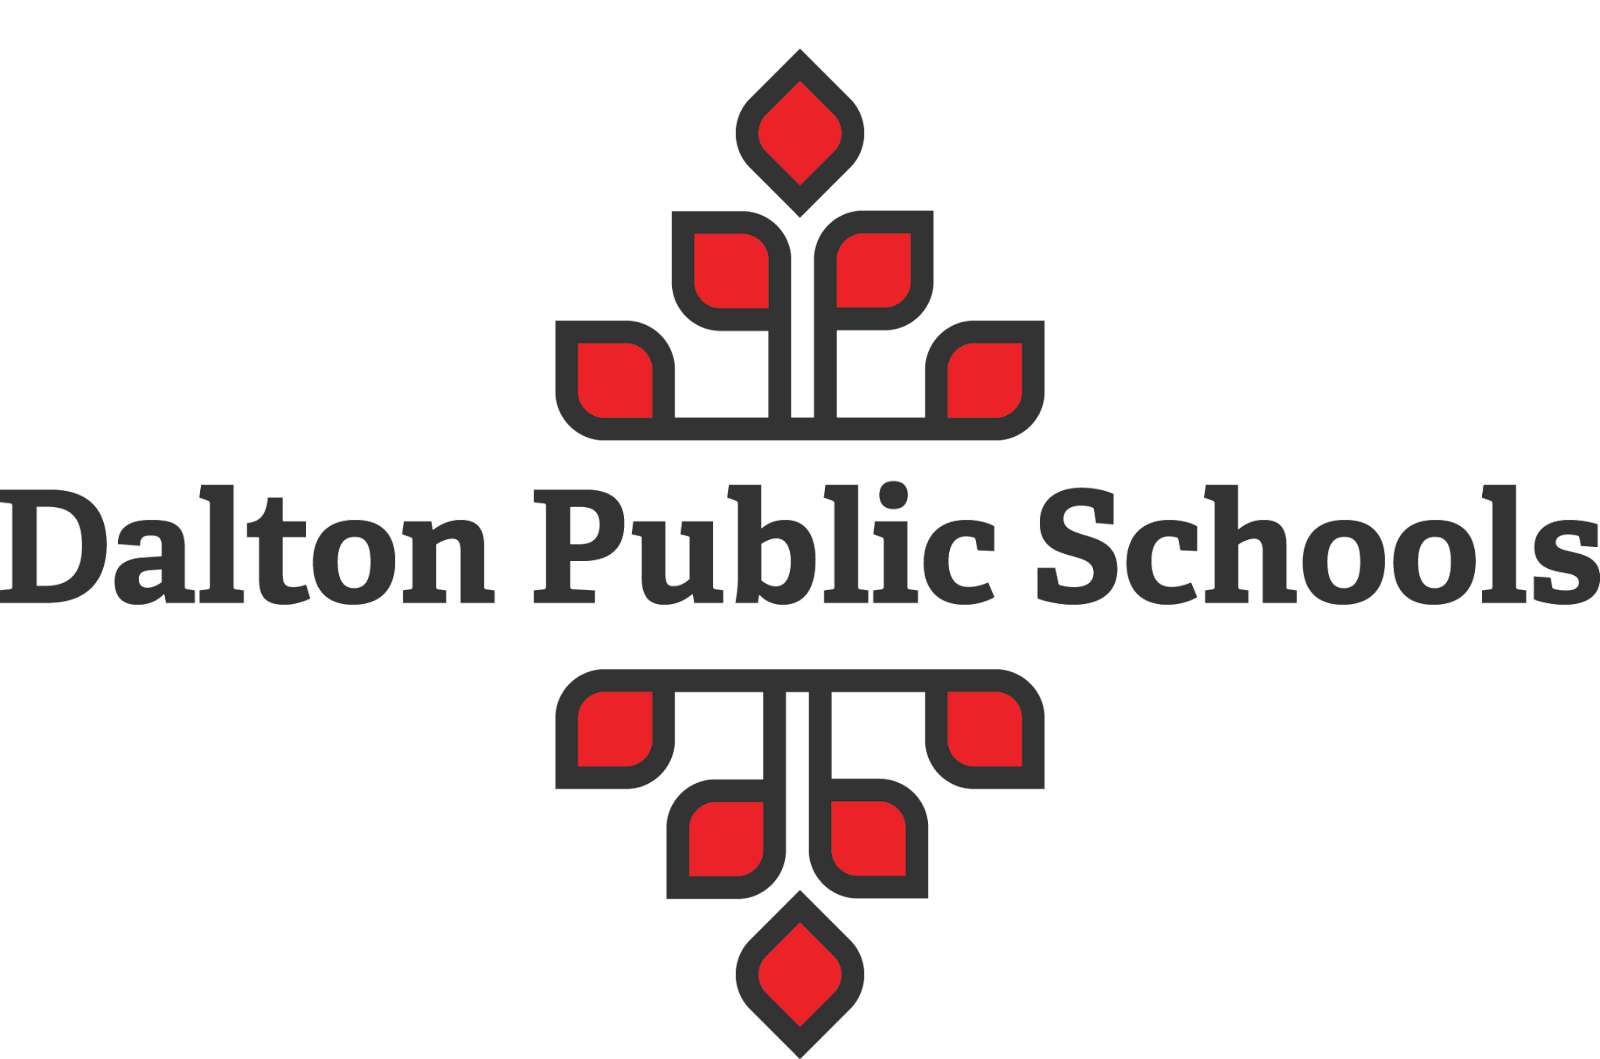 Dalton Public Schools logo